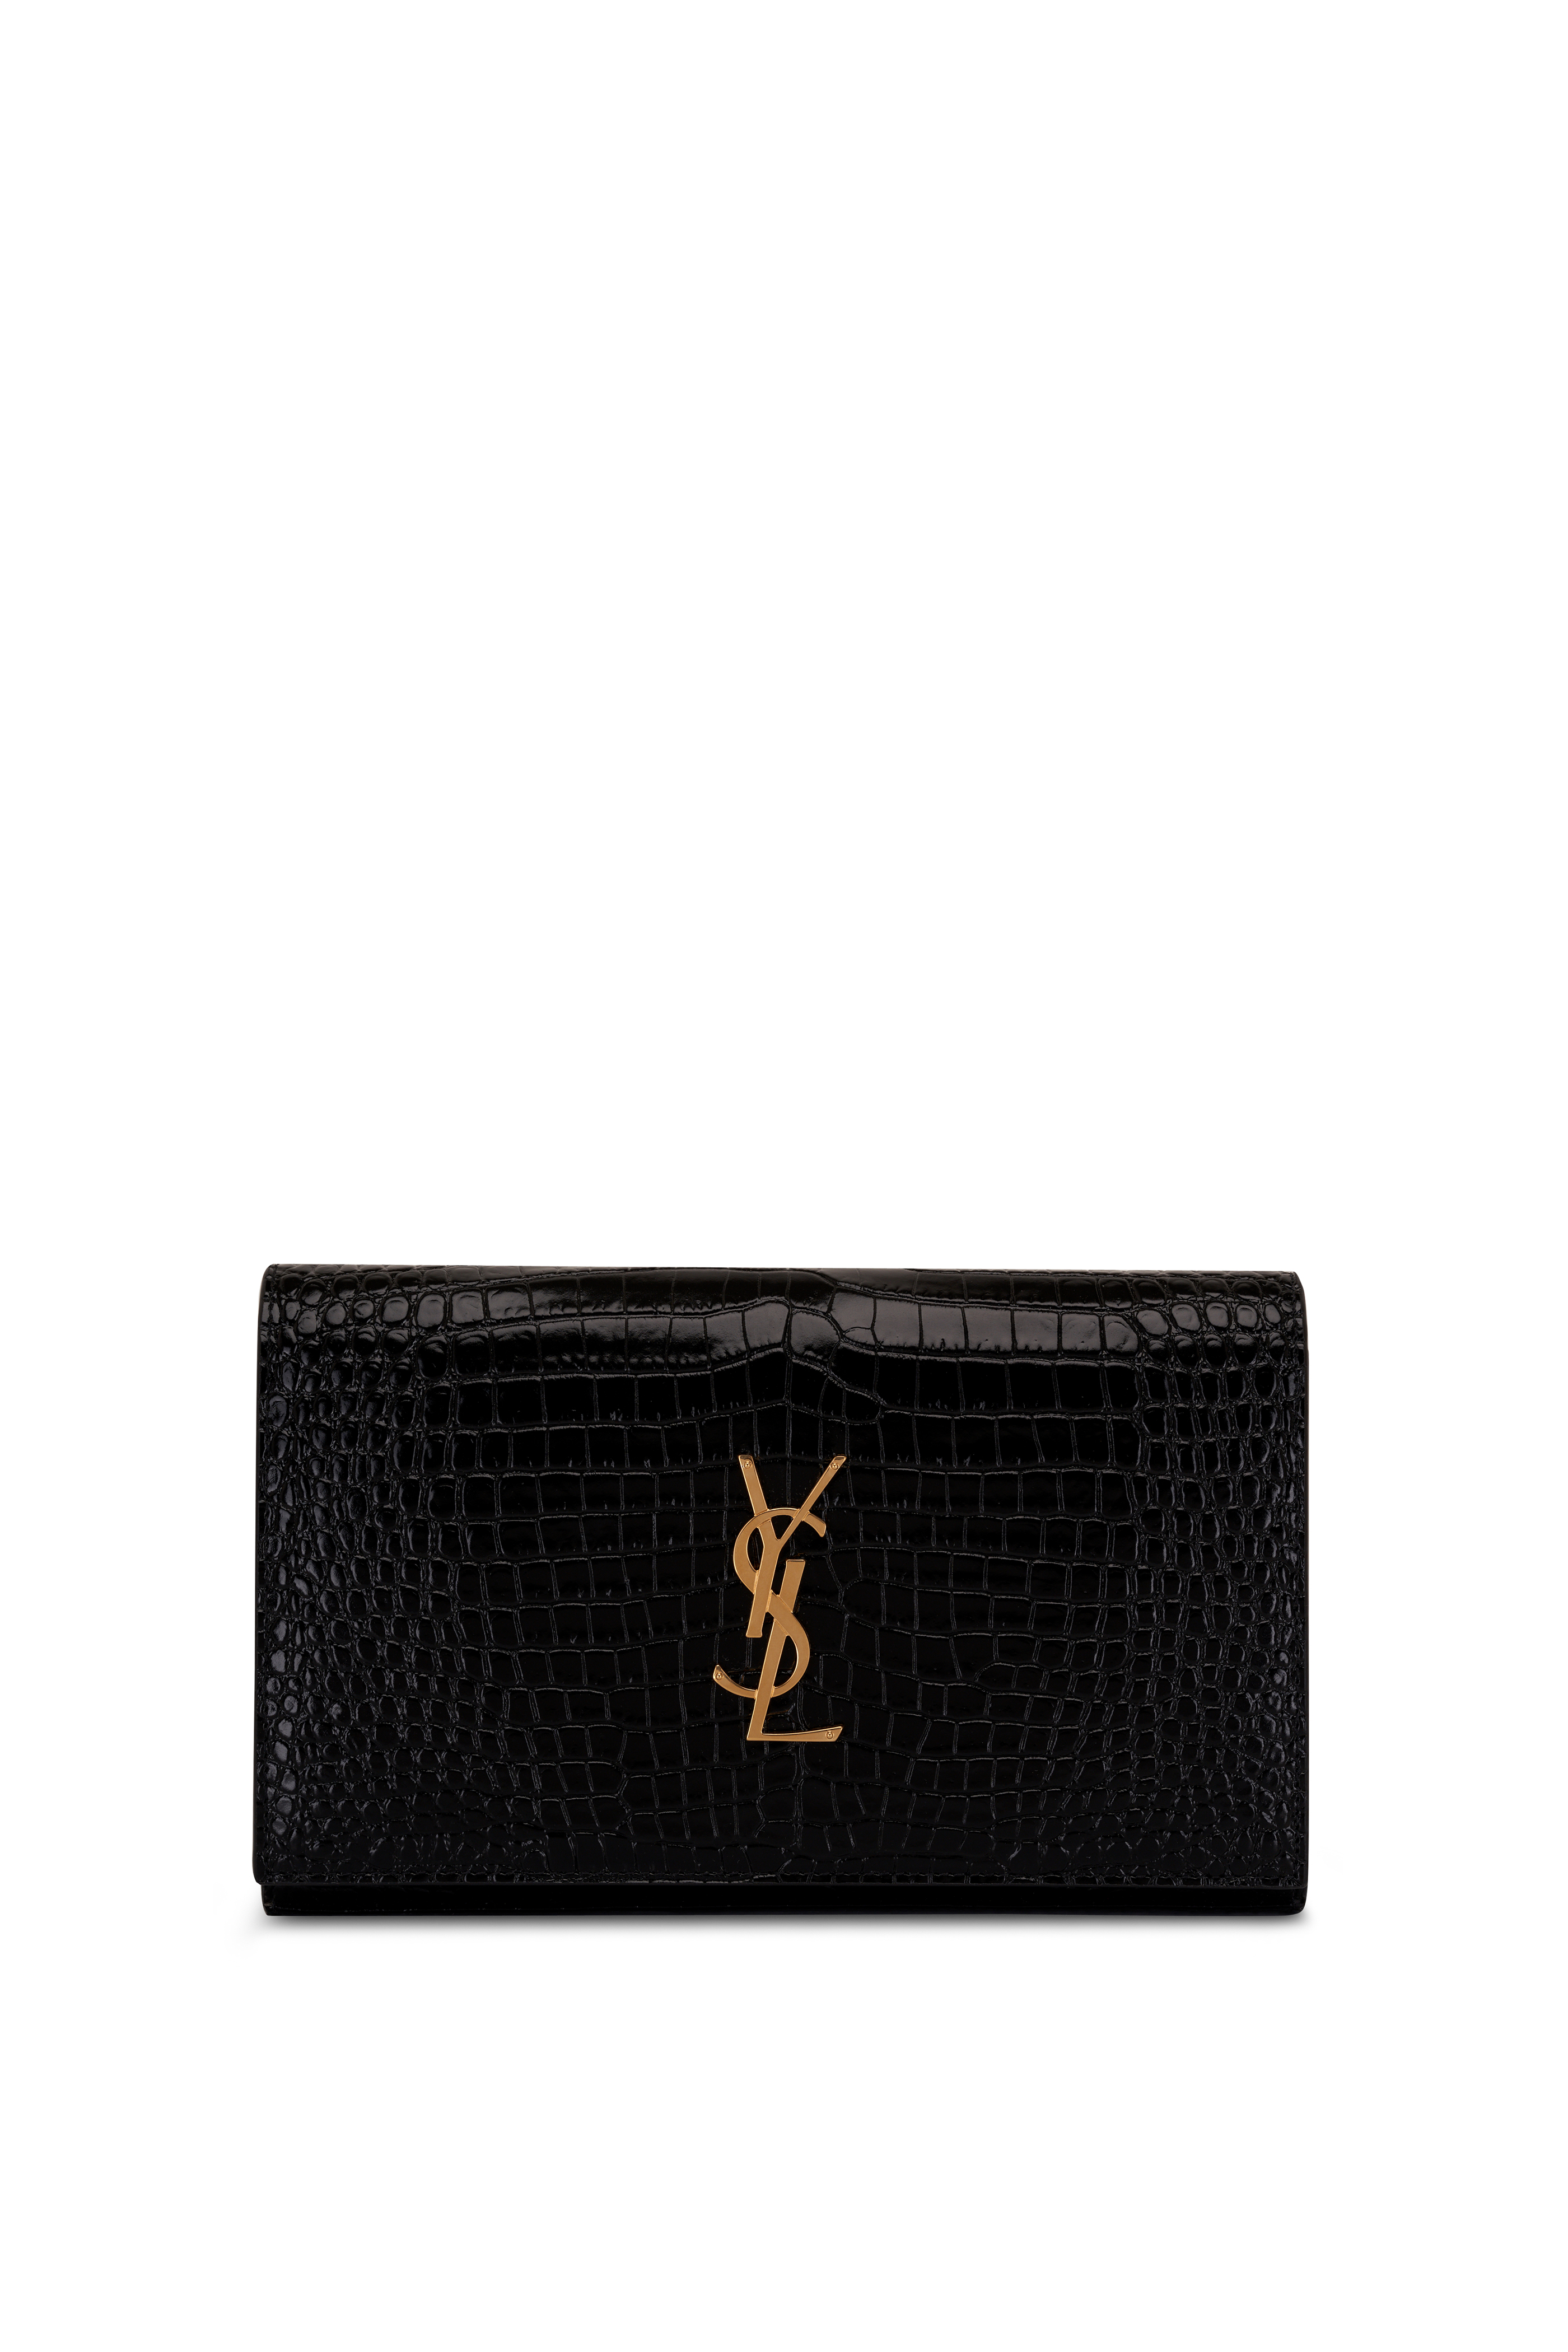 Louis Vuitton Monogram Leather Small Shoulder Bag Logo (M81570)